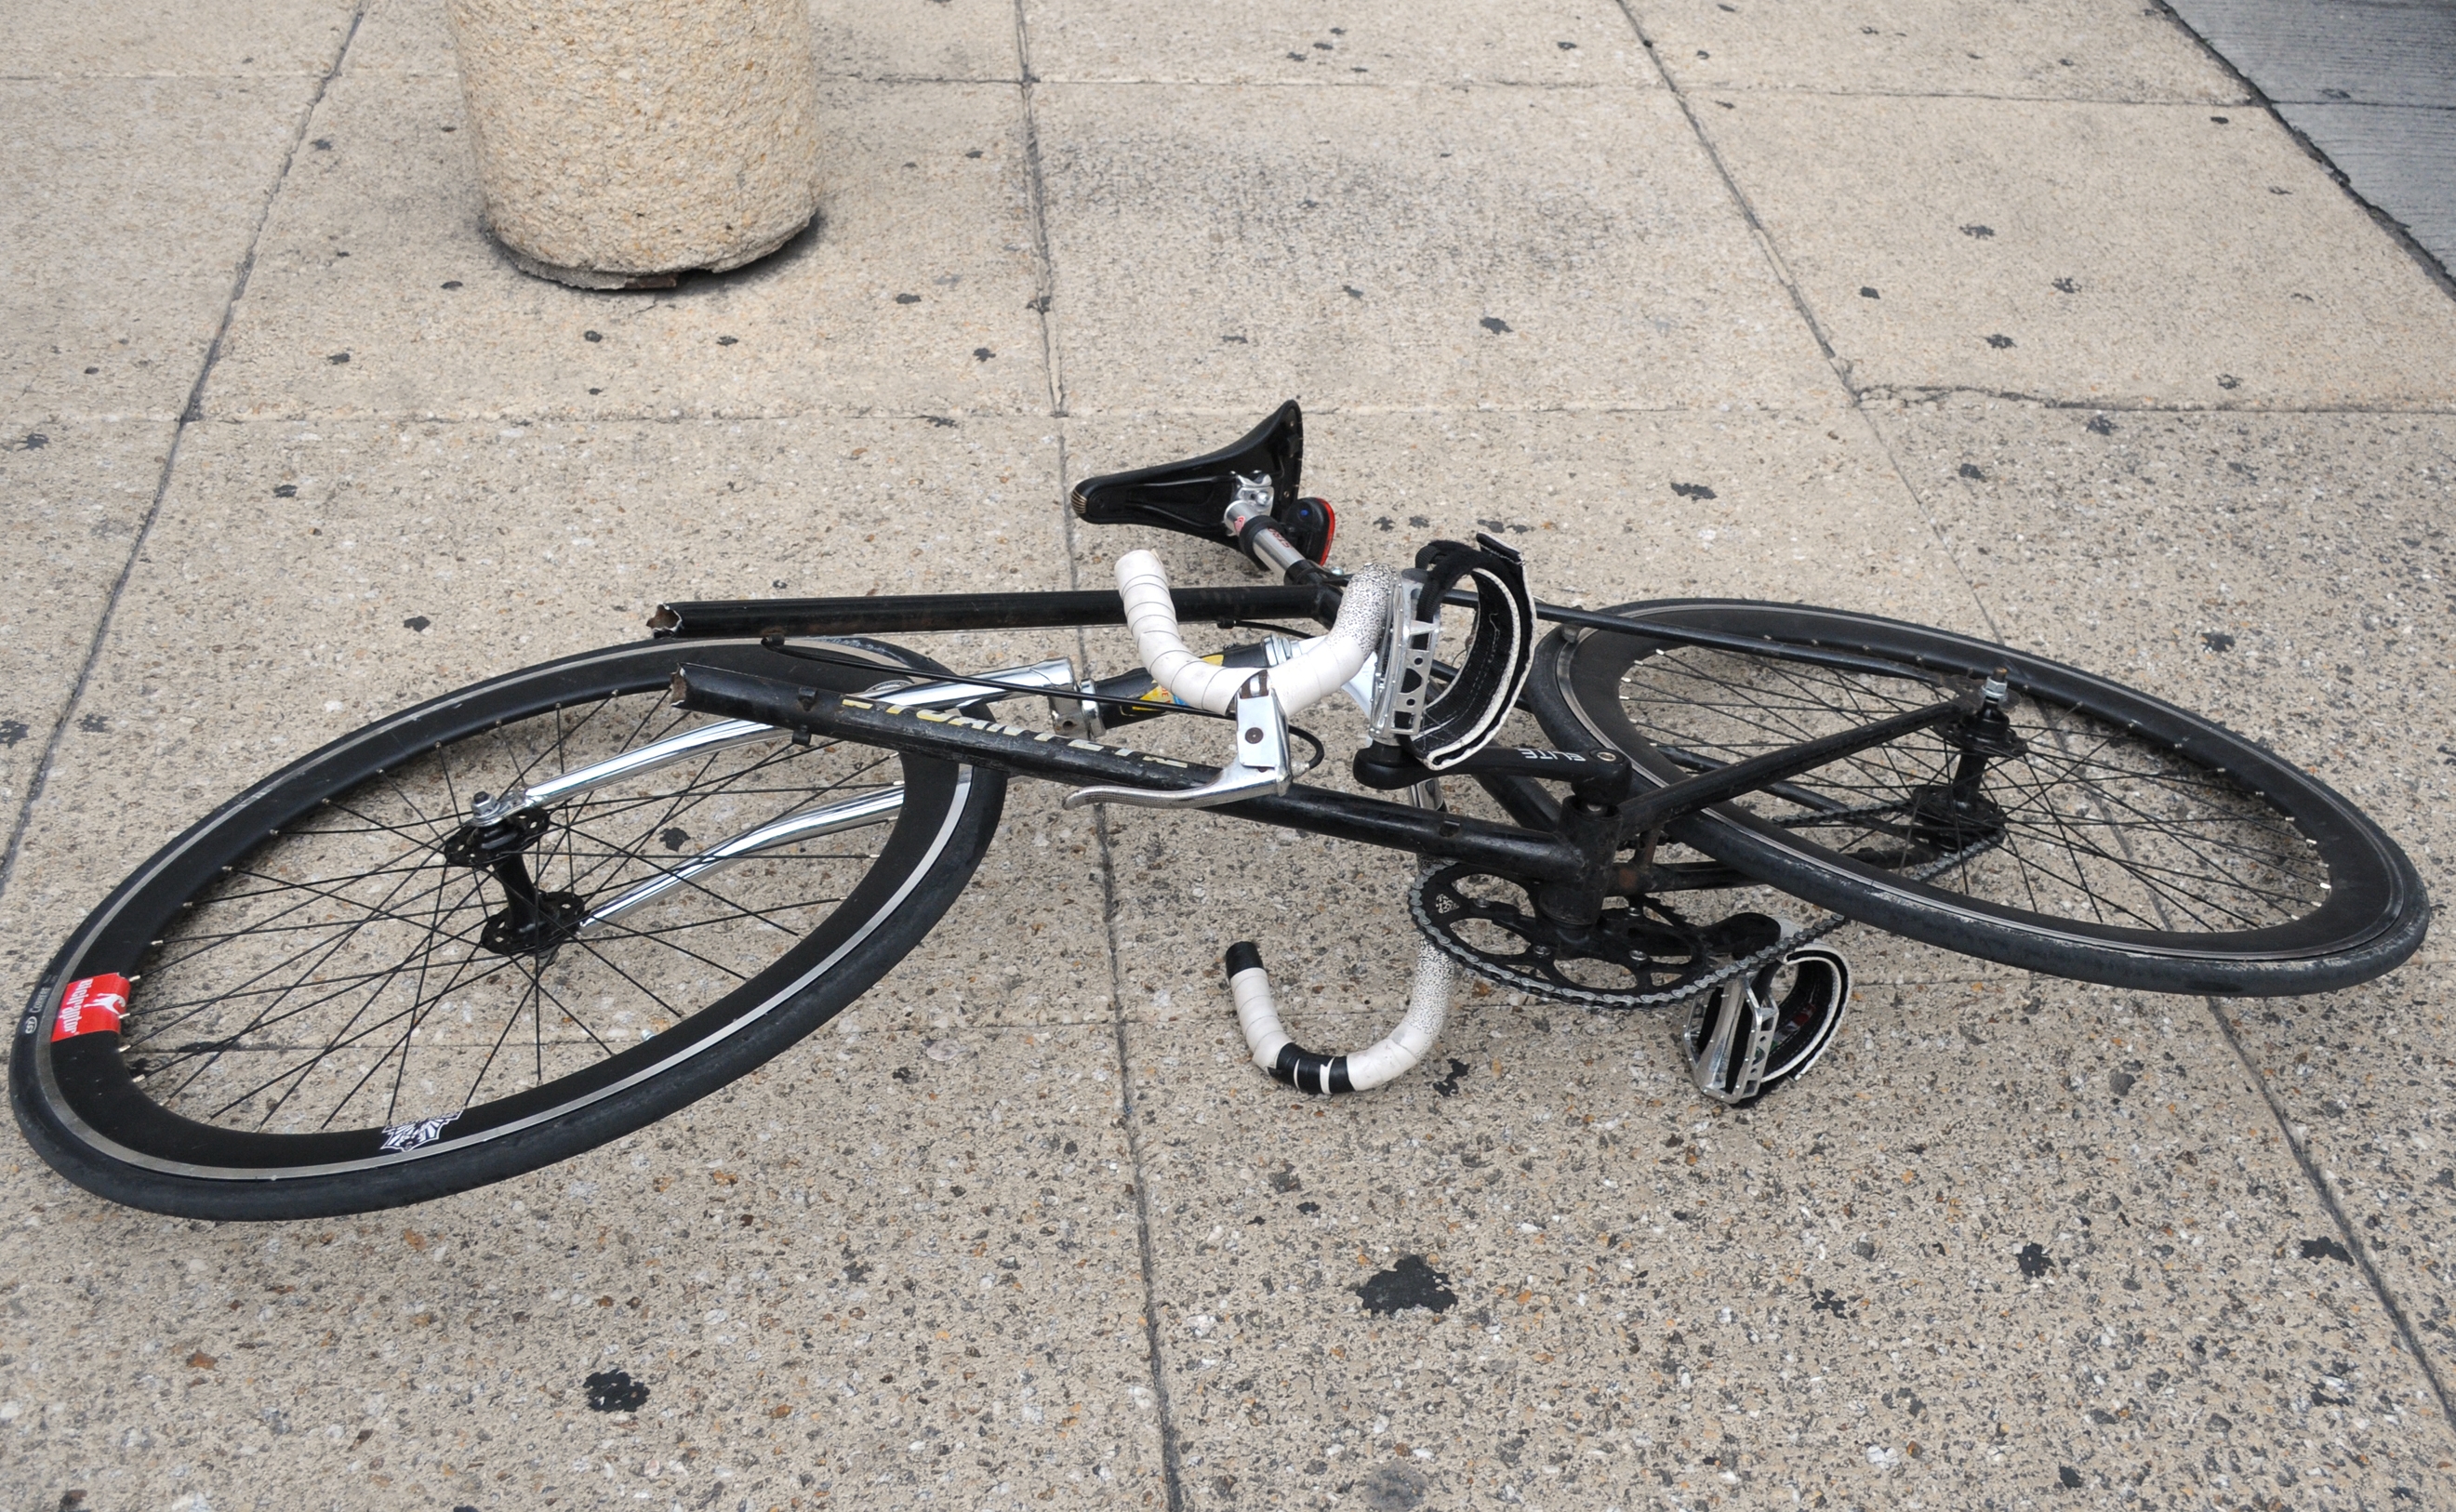 Camioneta de valores invade ciclovía y atropella a ciclista